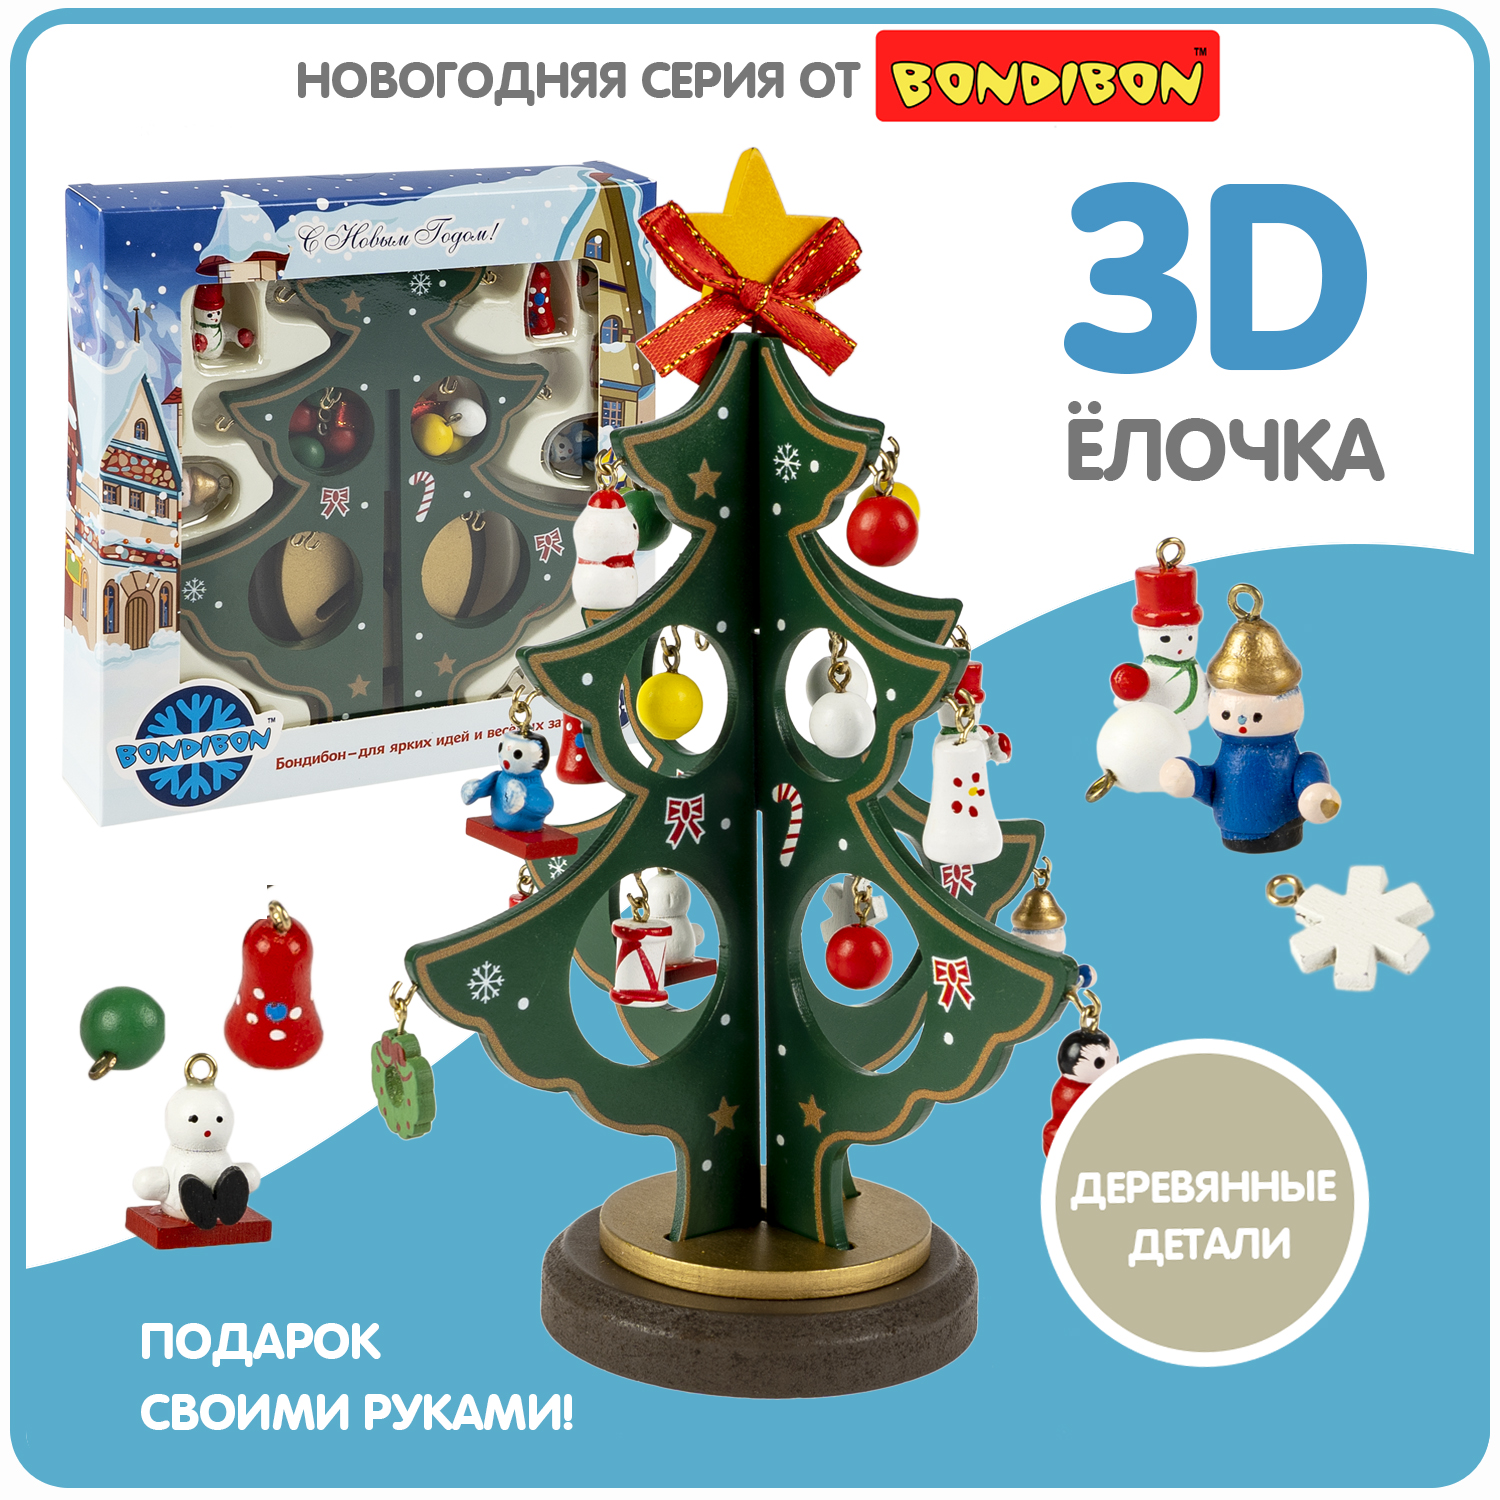 Новогодний набор Bondibon Деревянная ёлочка 3D с игрушками, высота 19,5см елочка 3d конструктор gc famiscom деревянная настольная с игрушками 24 см